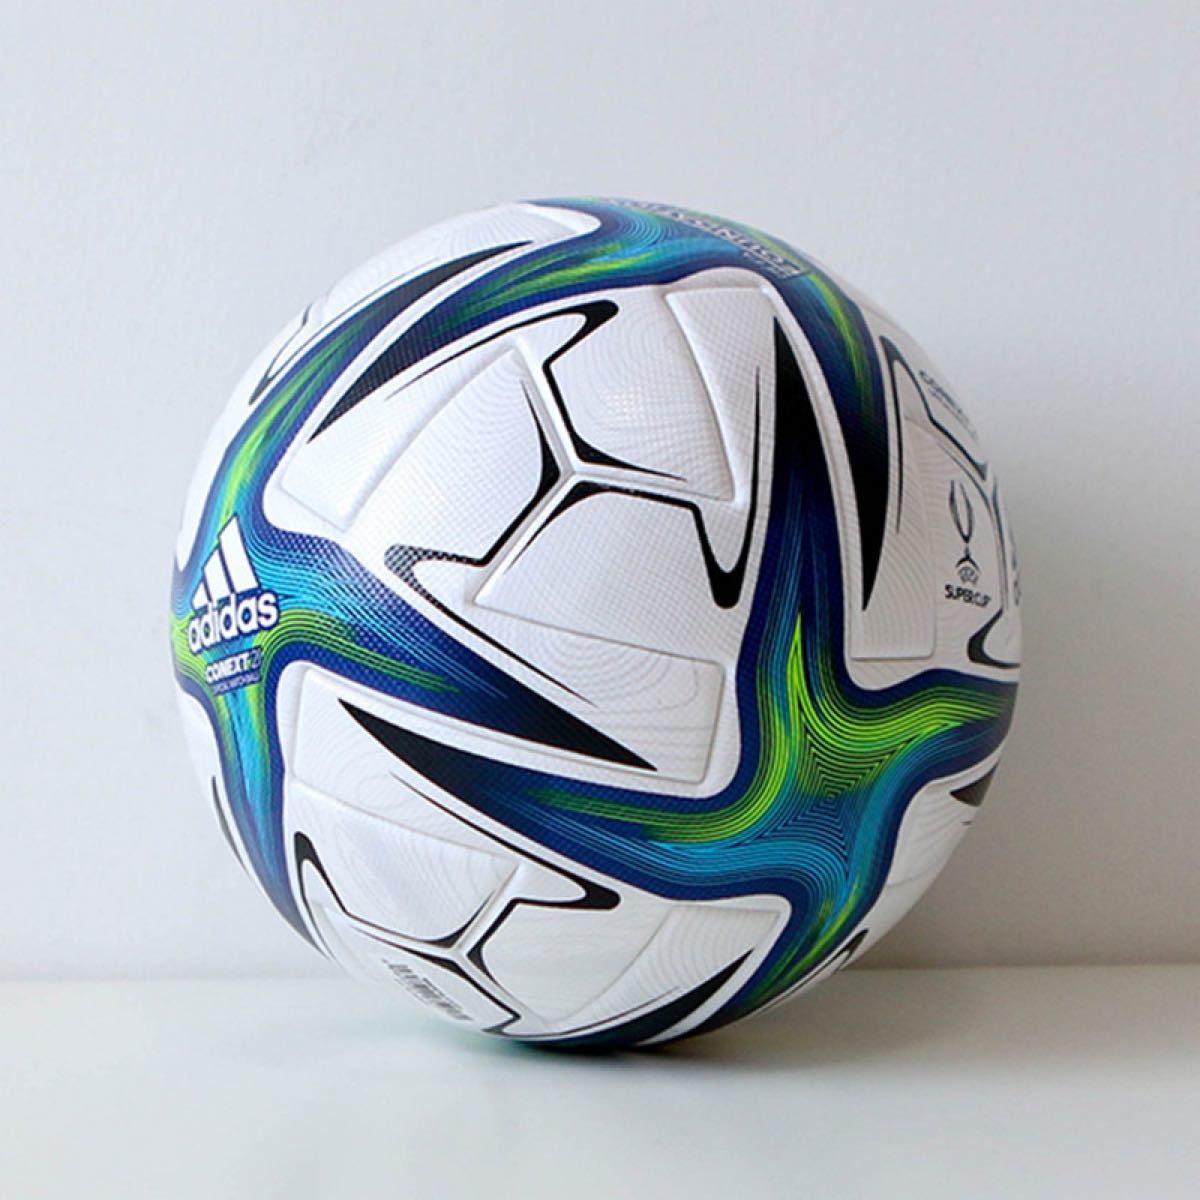 コネクト21 UEFAスーパーカップ 公式試合球 adidas サッカーボール